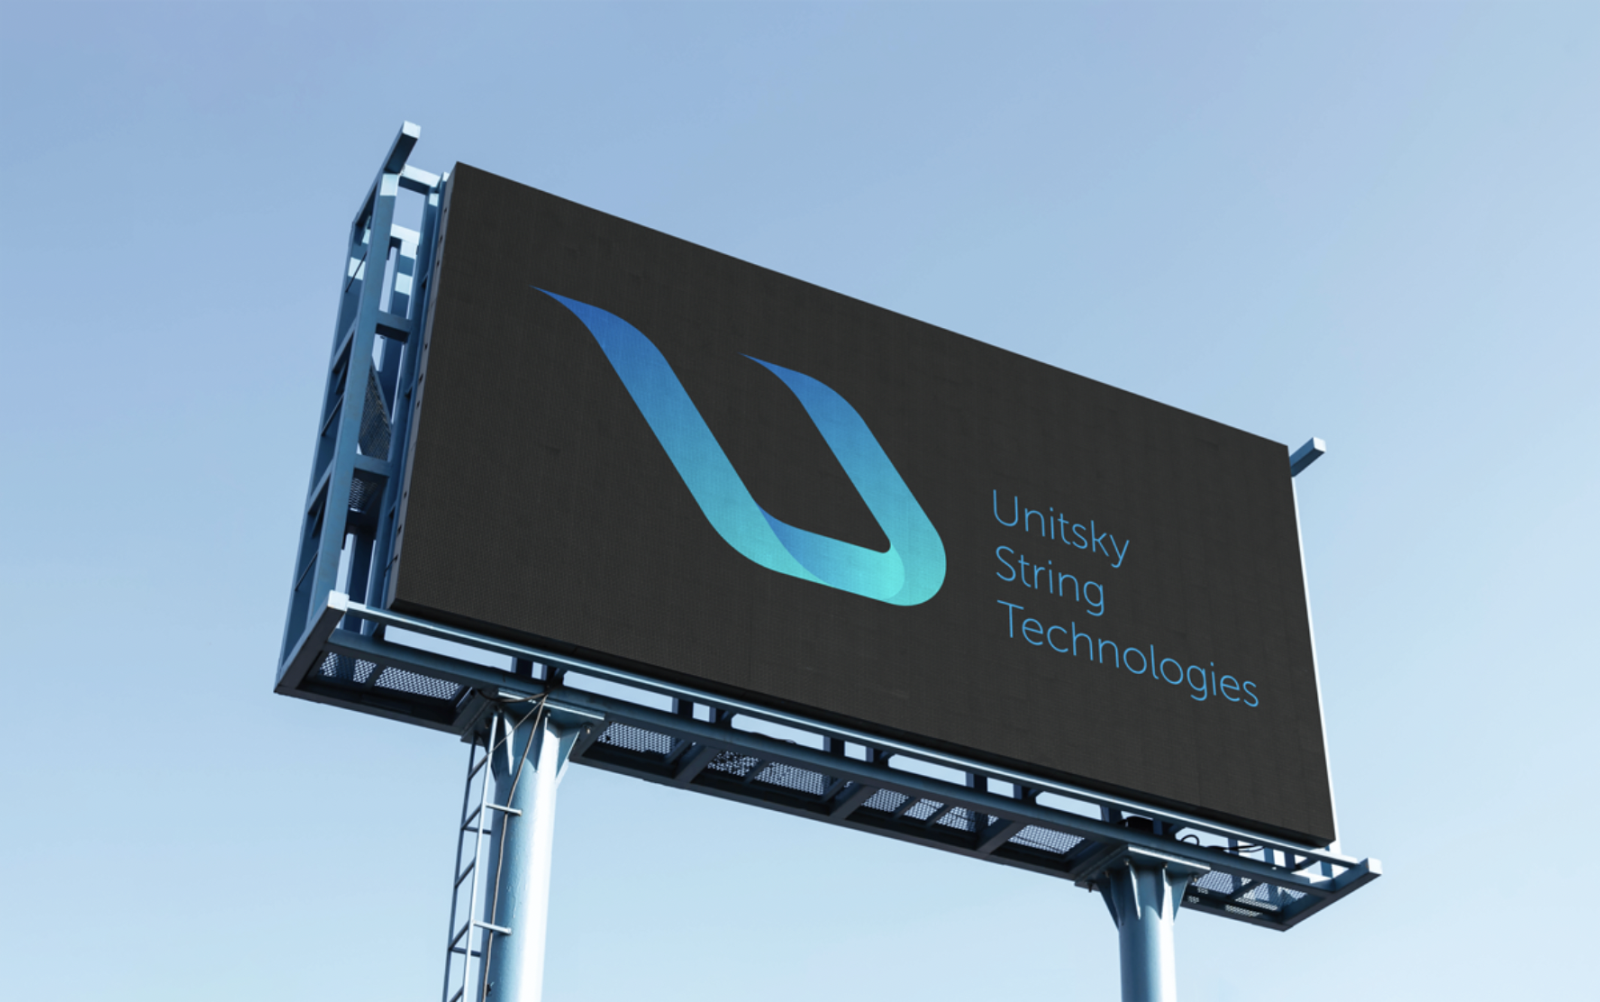 Công ty kỹ thuật Belarus Unitsky String Technologies Inc. đã tuyên bố hoàn thành việc đổi thương hiệu